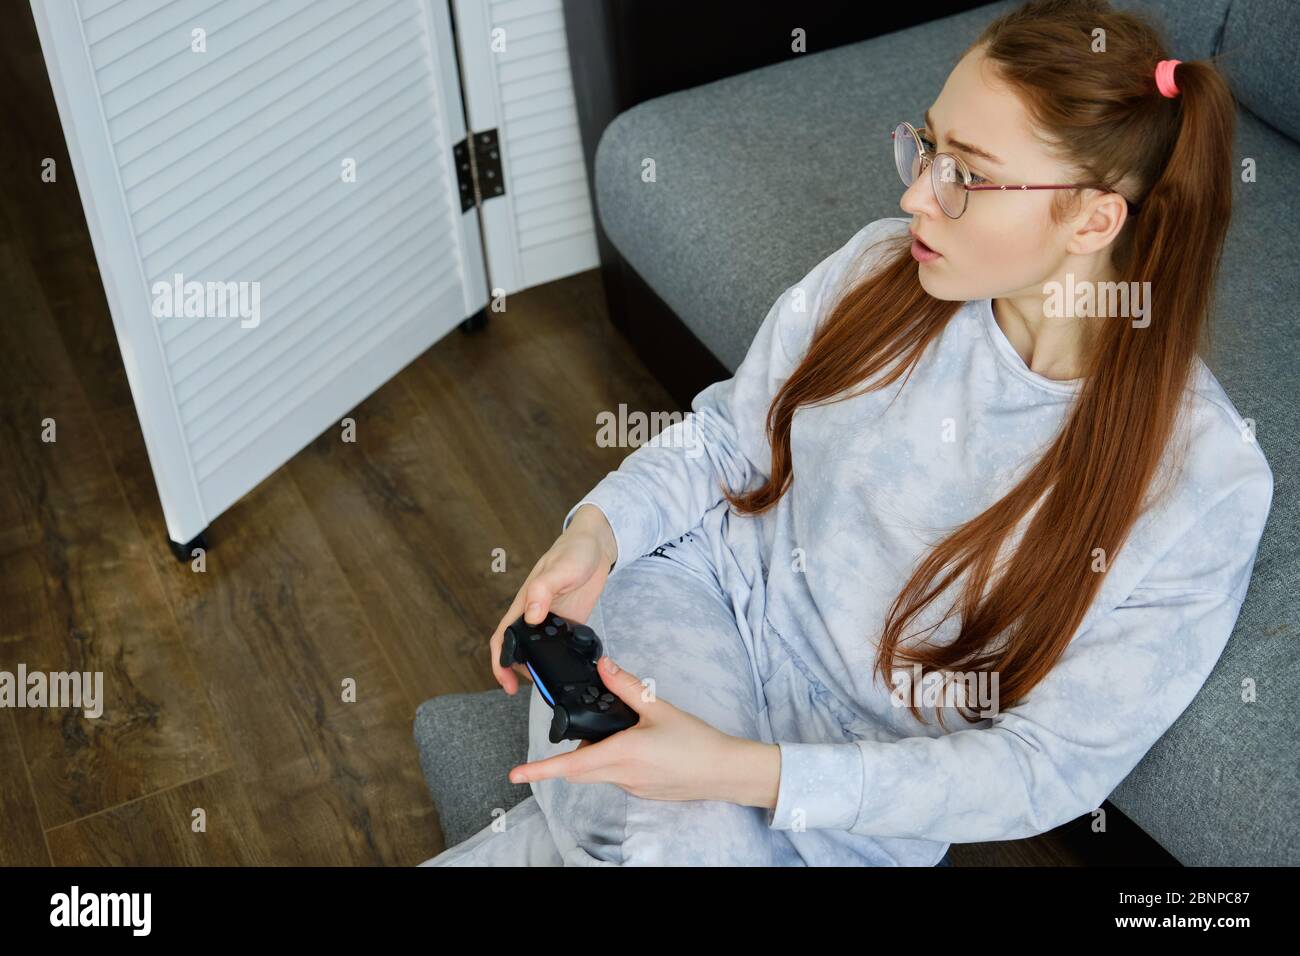 Ragazza rossa in pigiama si siede sul pavimento con un joystick di gioco, la vista dall'alto. Foto Stock